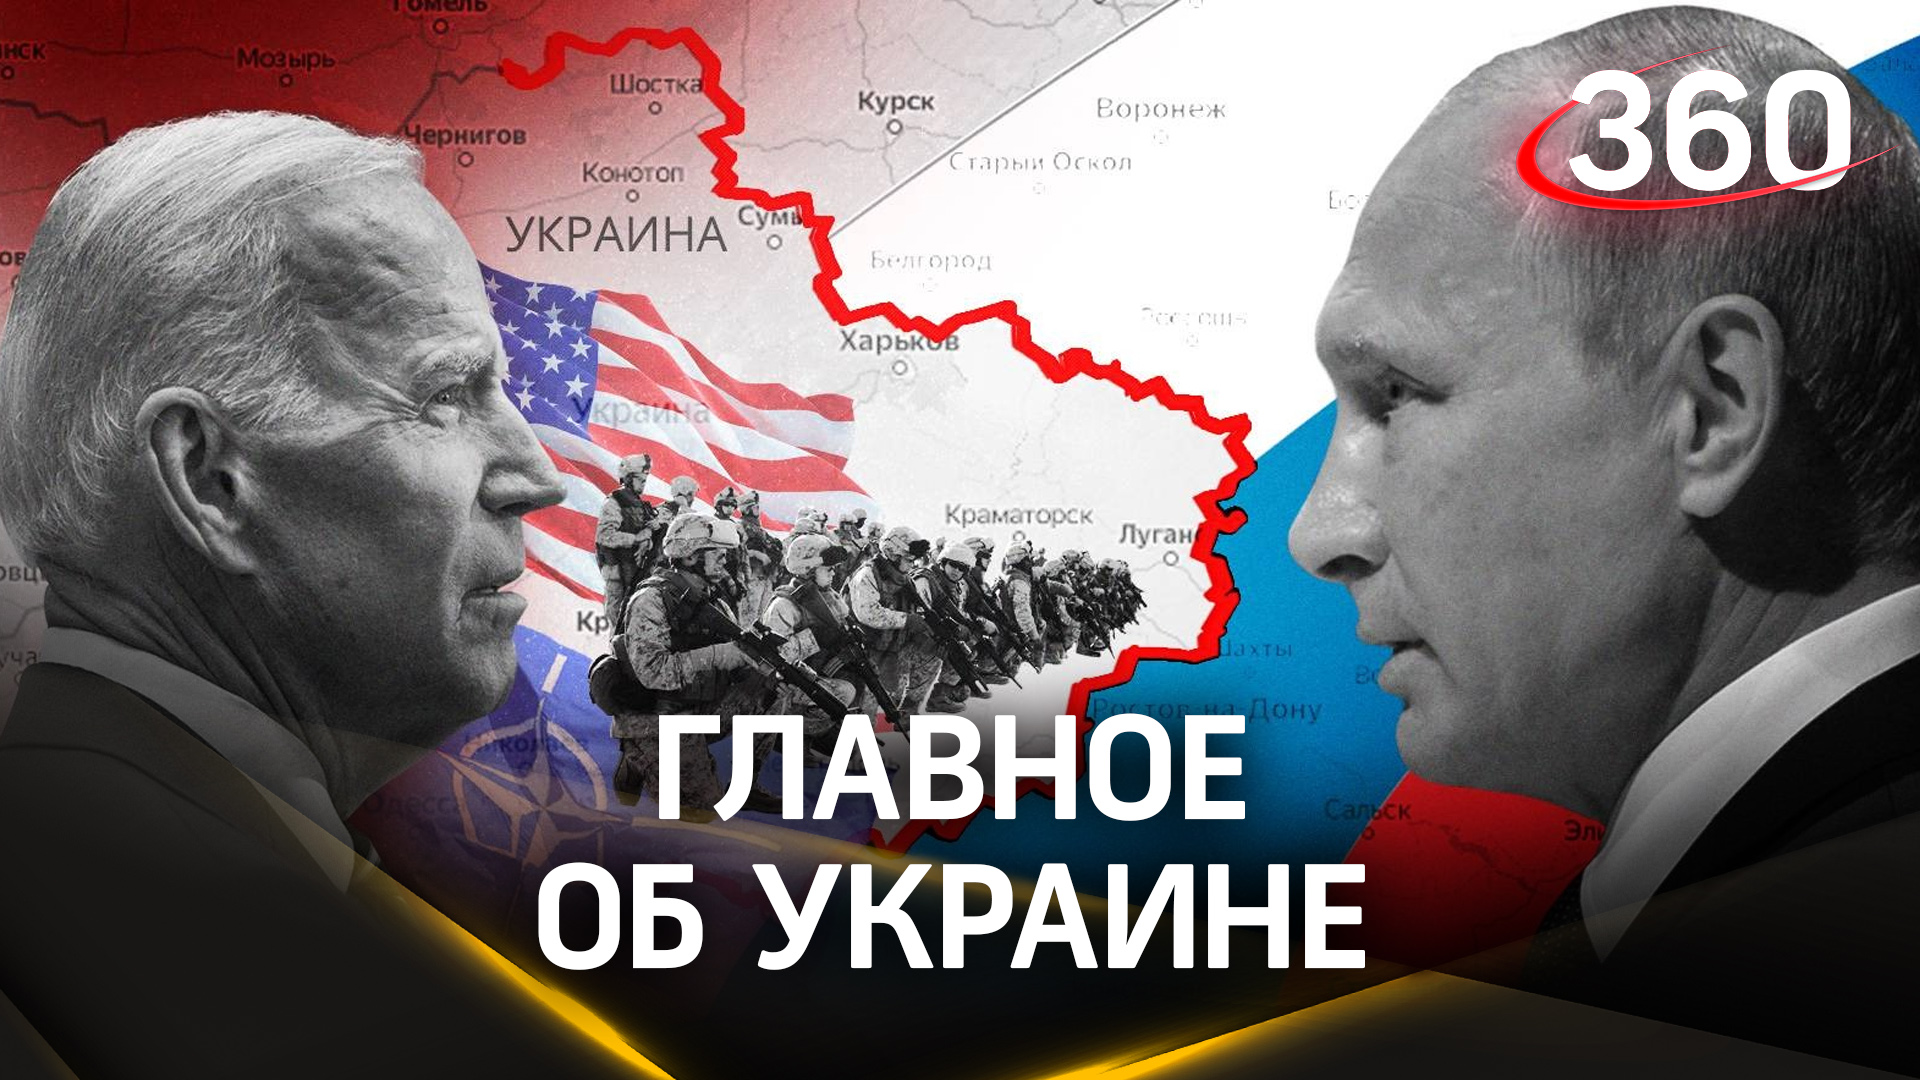 Введенные санкции против украины. Санкции против Путина.